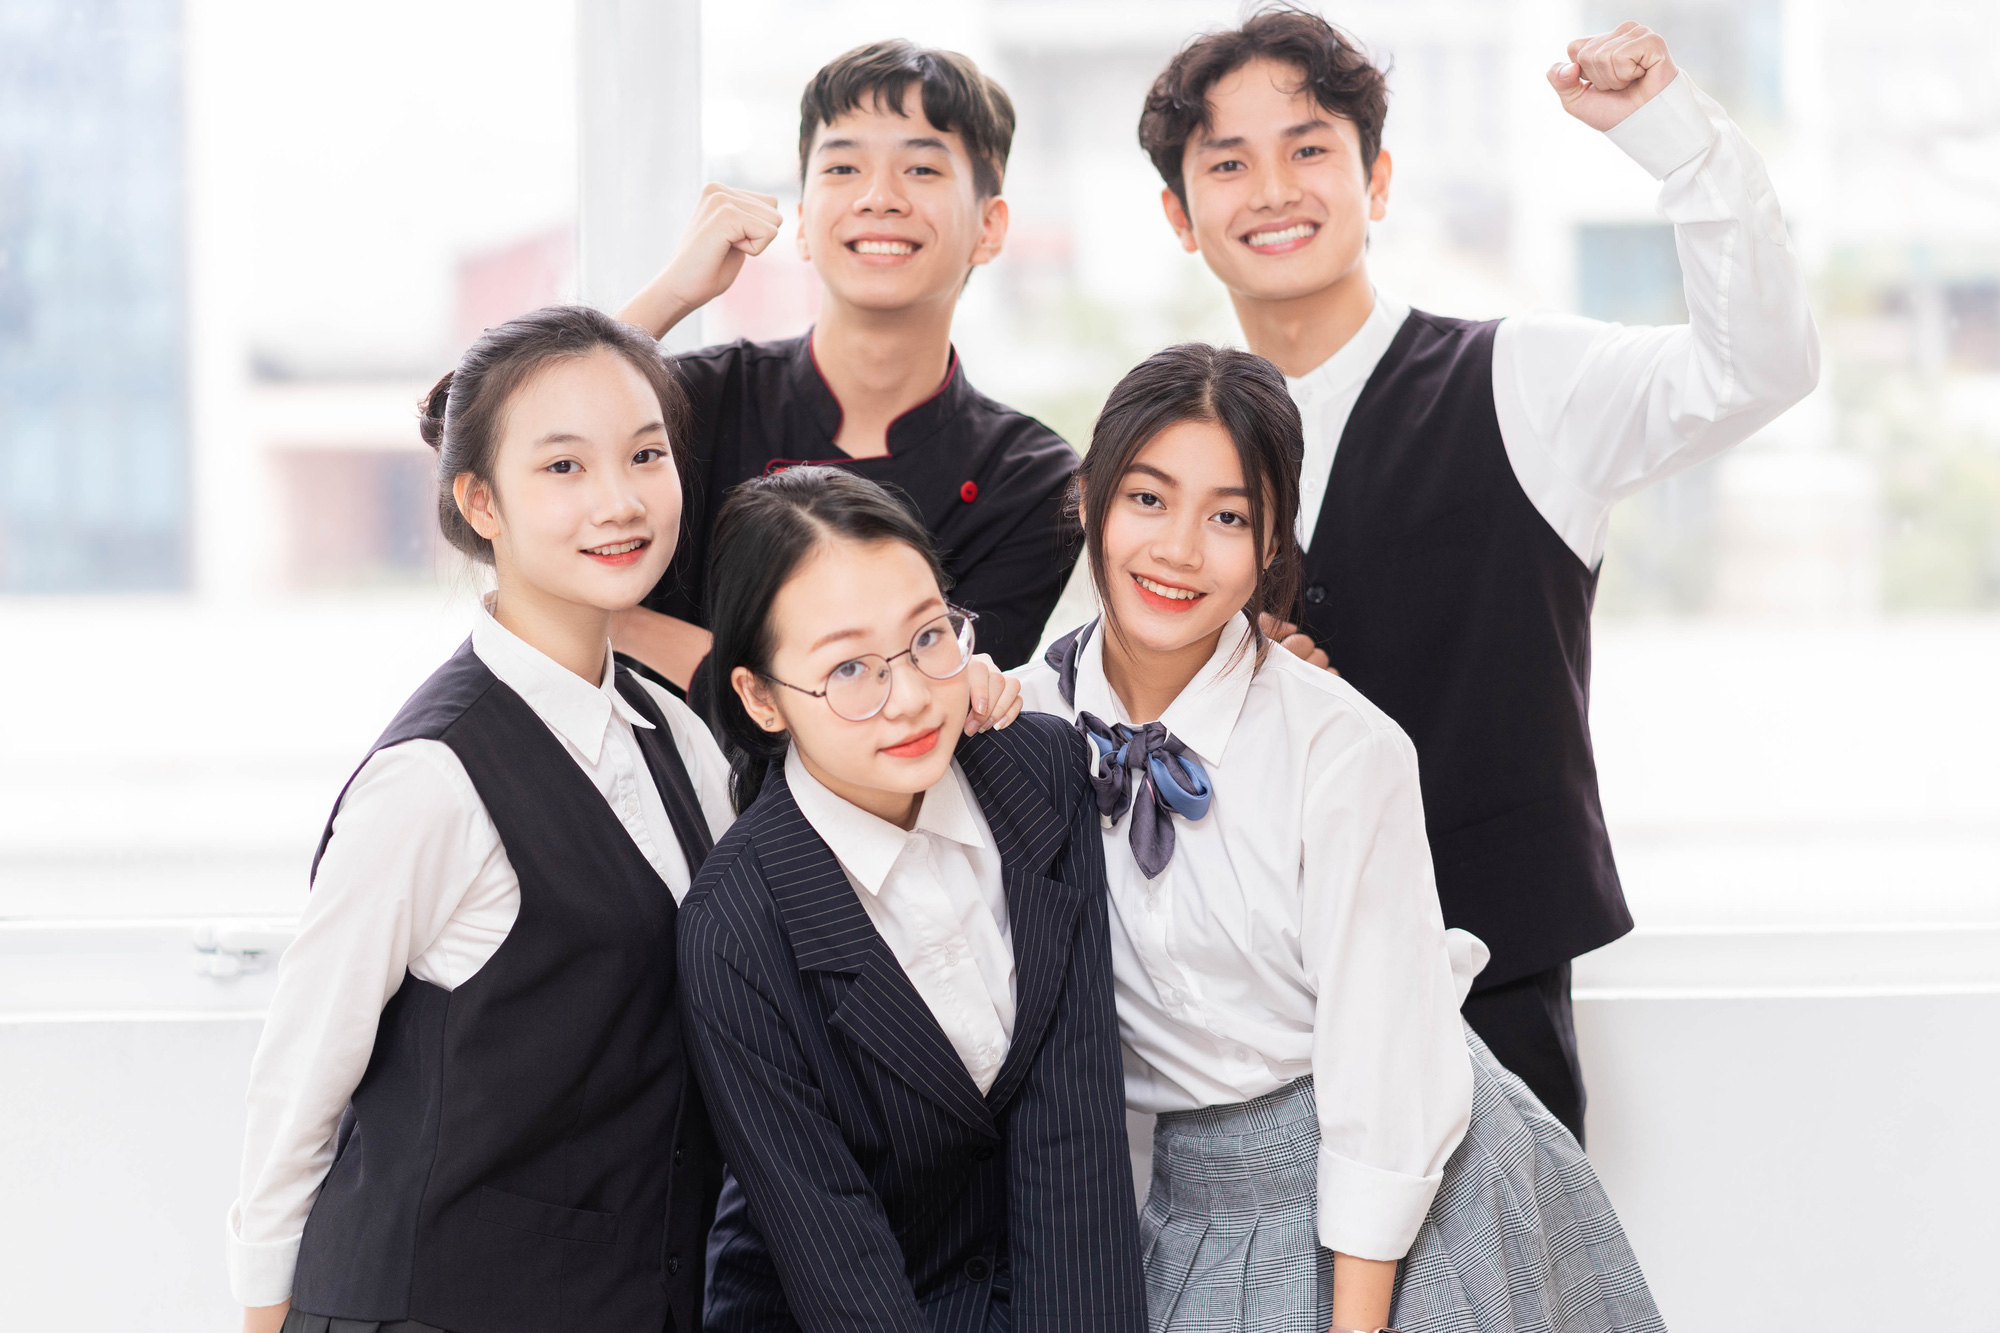 Trường Cao đẳng Kinh tế - Kỹ thuật Hà Nội ký kết với 6 doanh nghiệp nhằm đảm bảo “đầu ra” cho sinh viên - Ảnh 2.